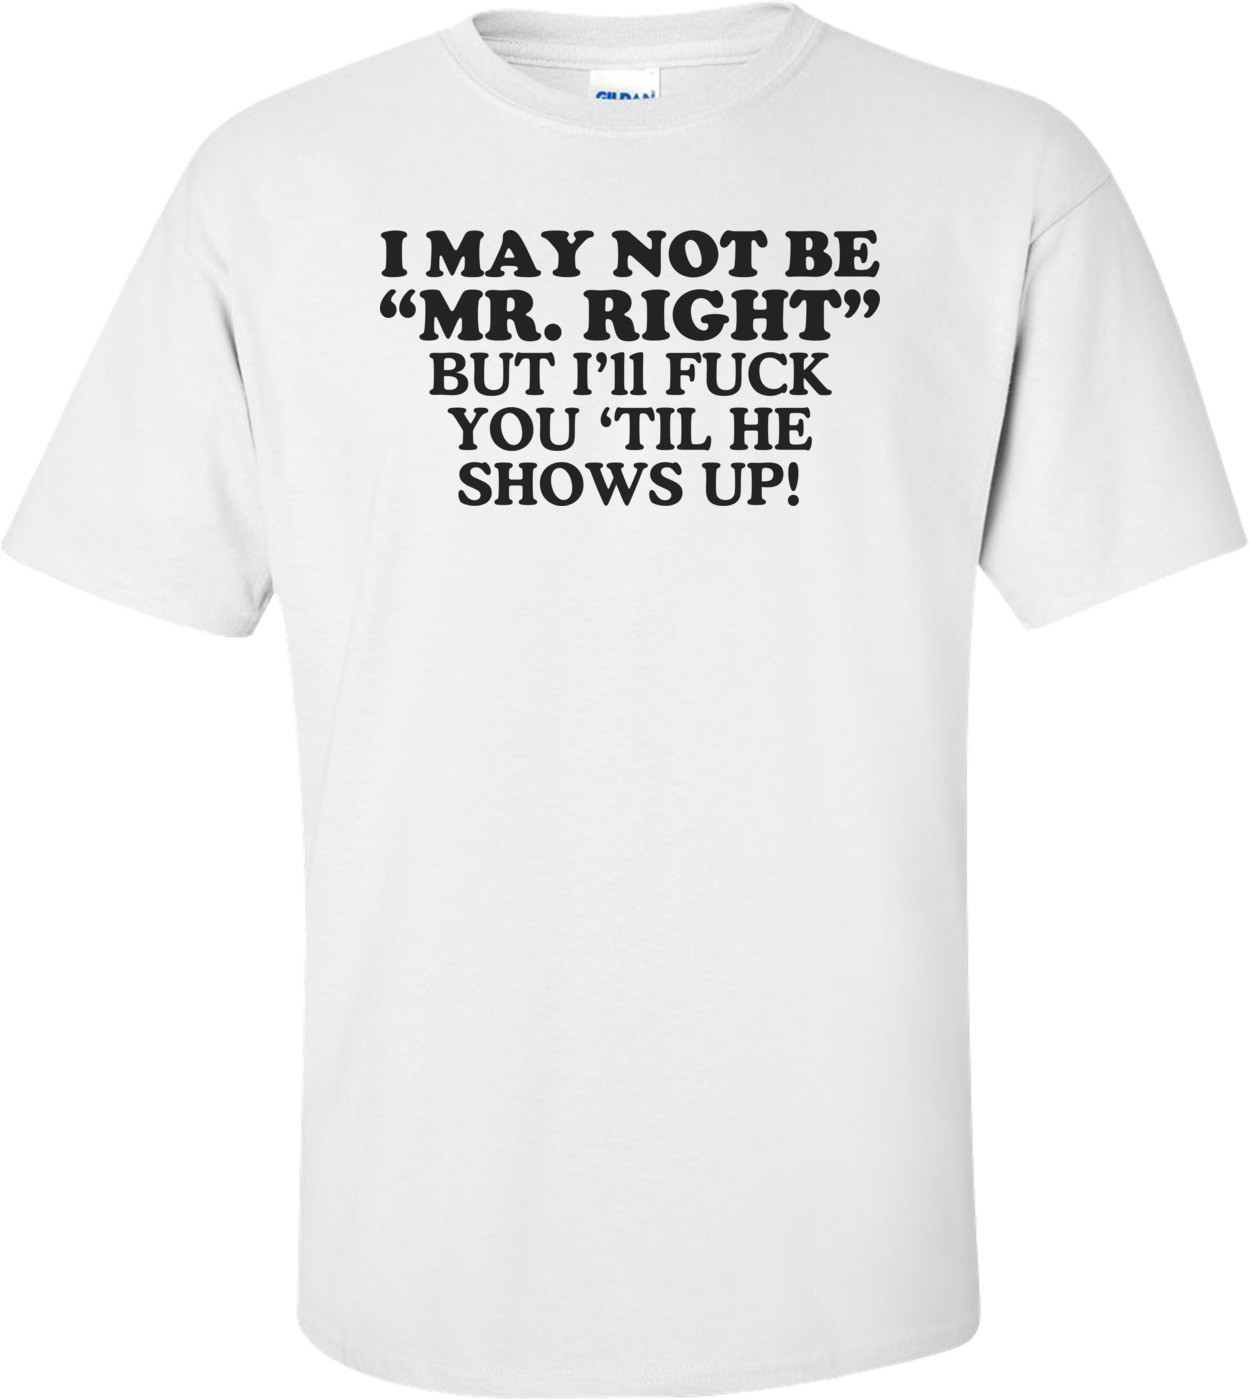 I May Not Be Mr. Right, But I'll Fuck You 'Til He Shows Up! Offensive Shirt